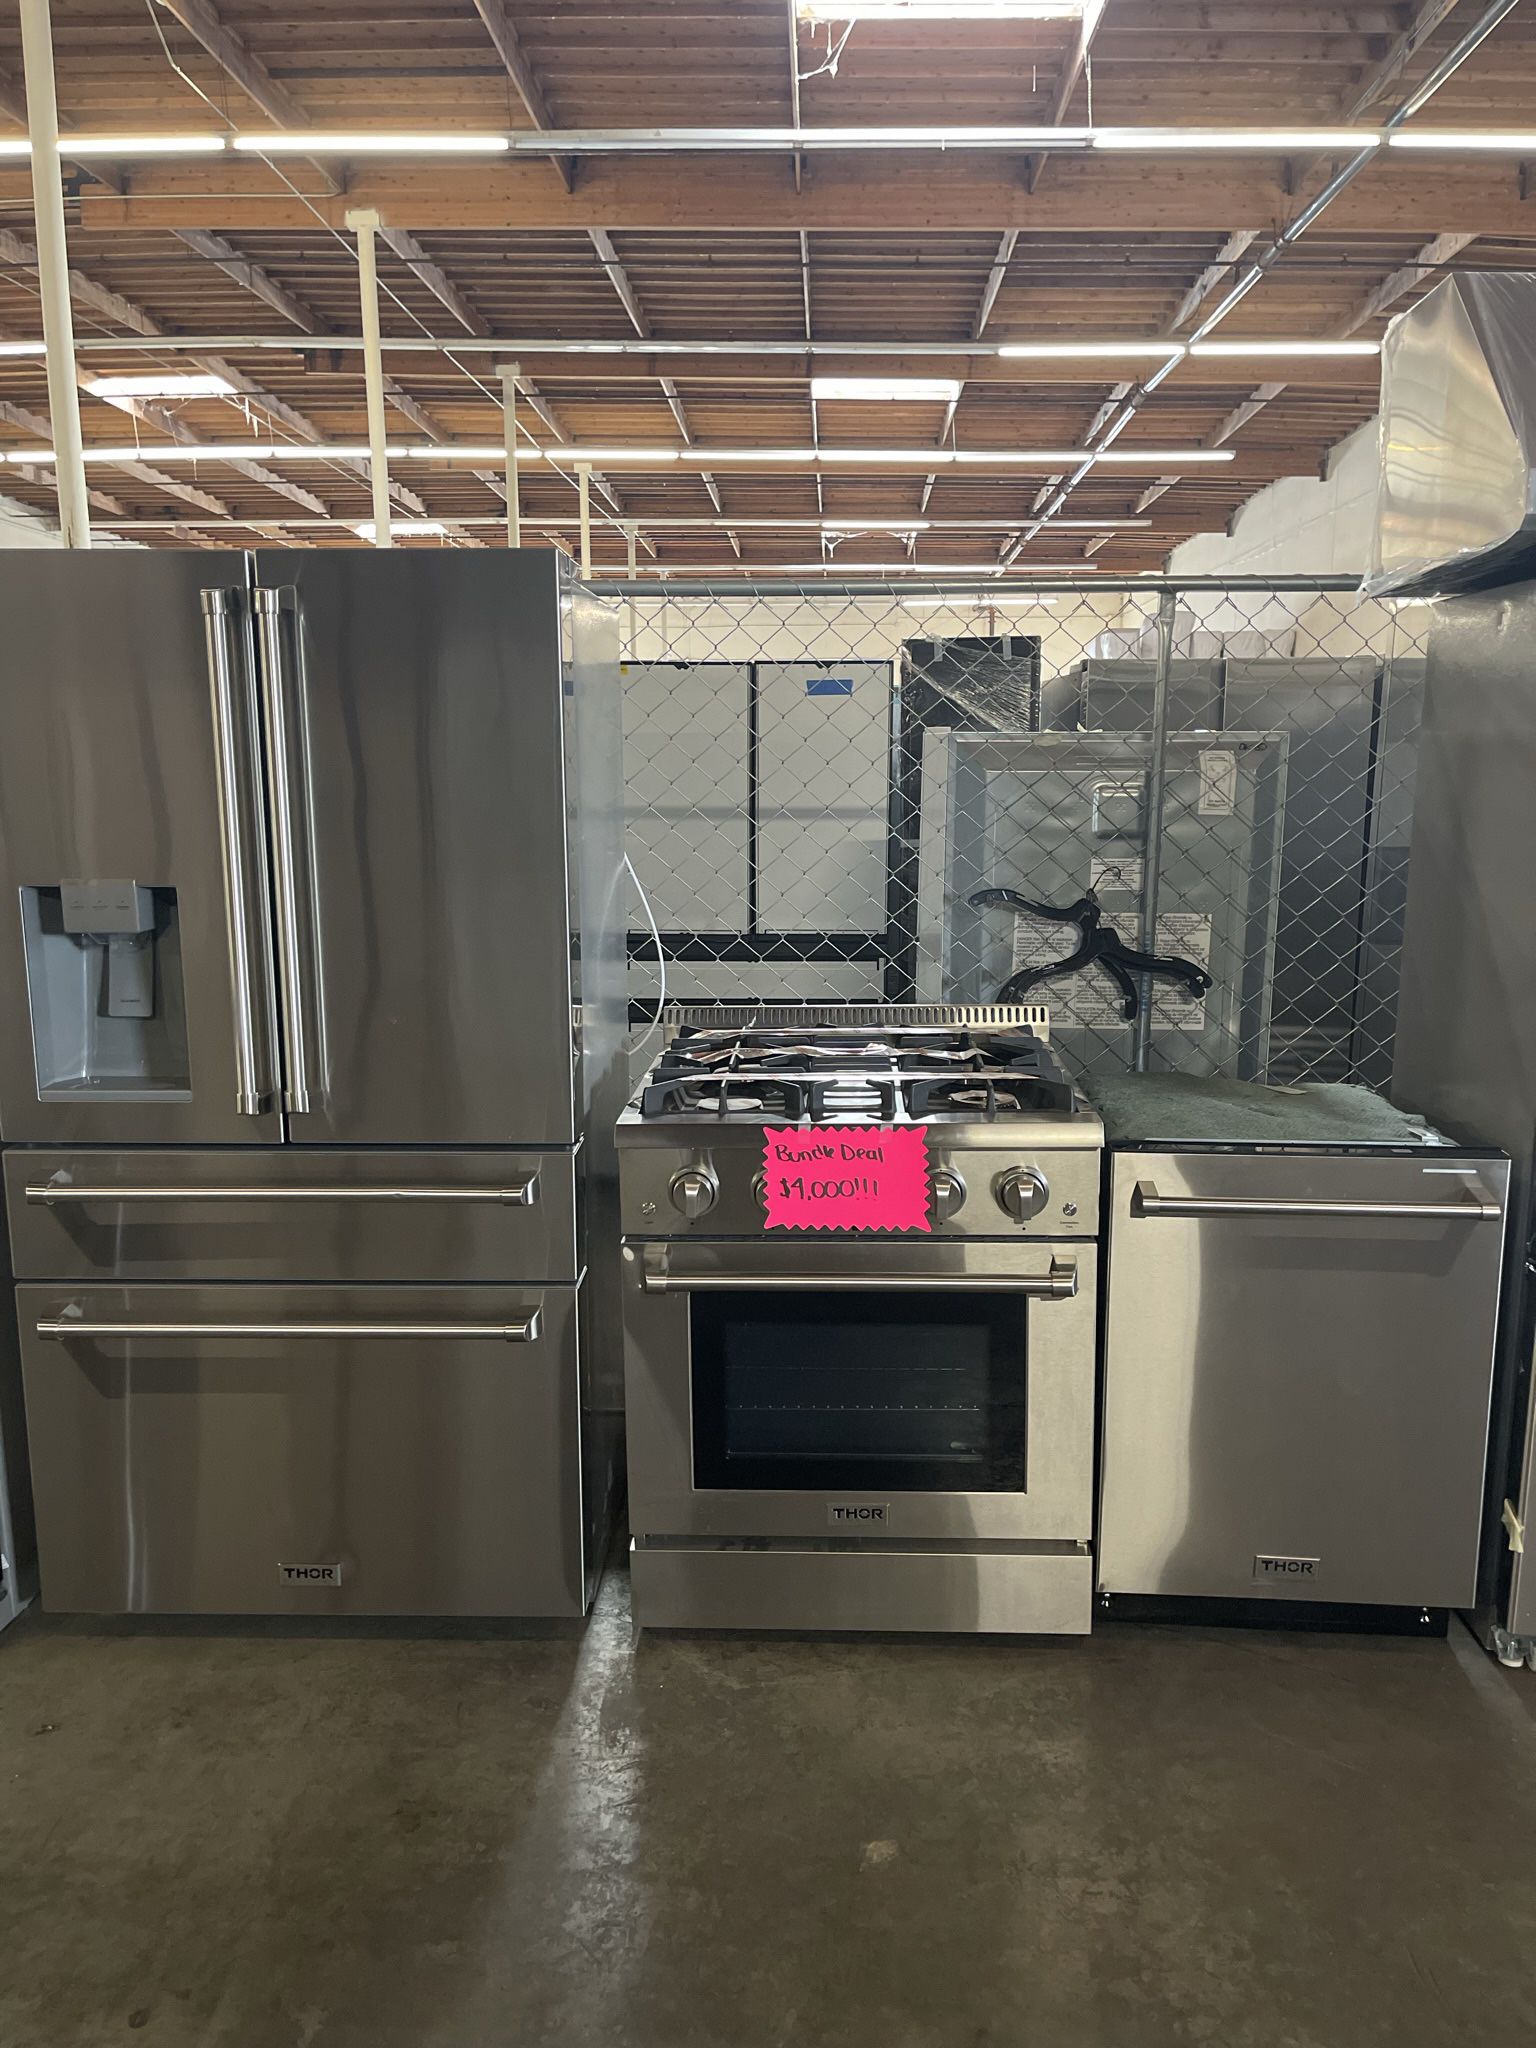 appliance bundle set kitchen set 